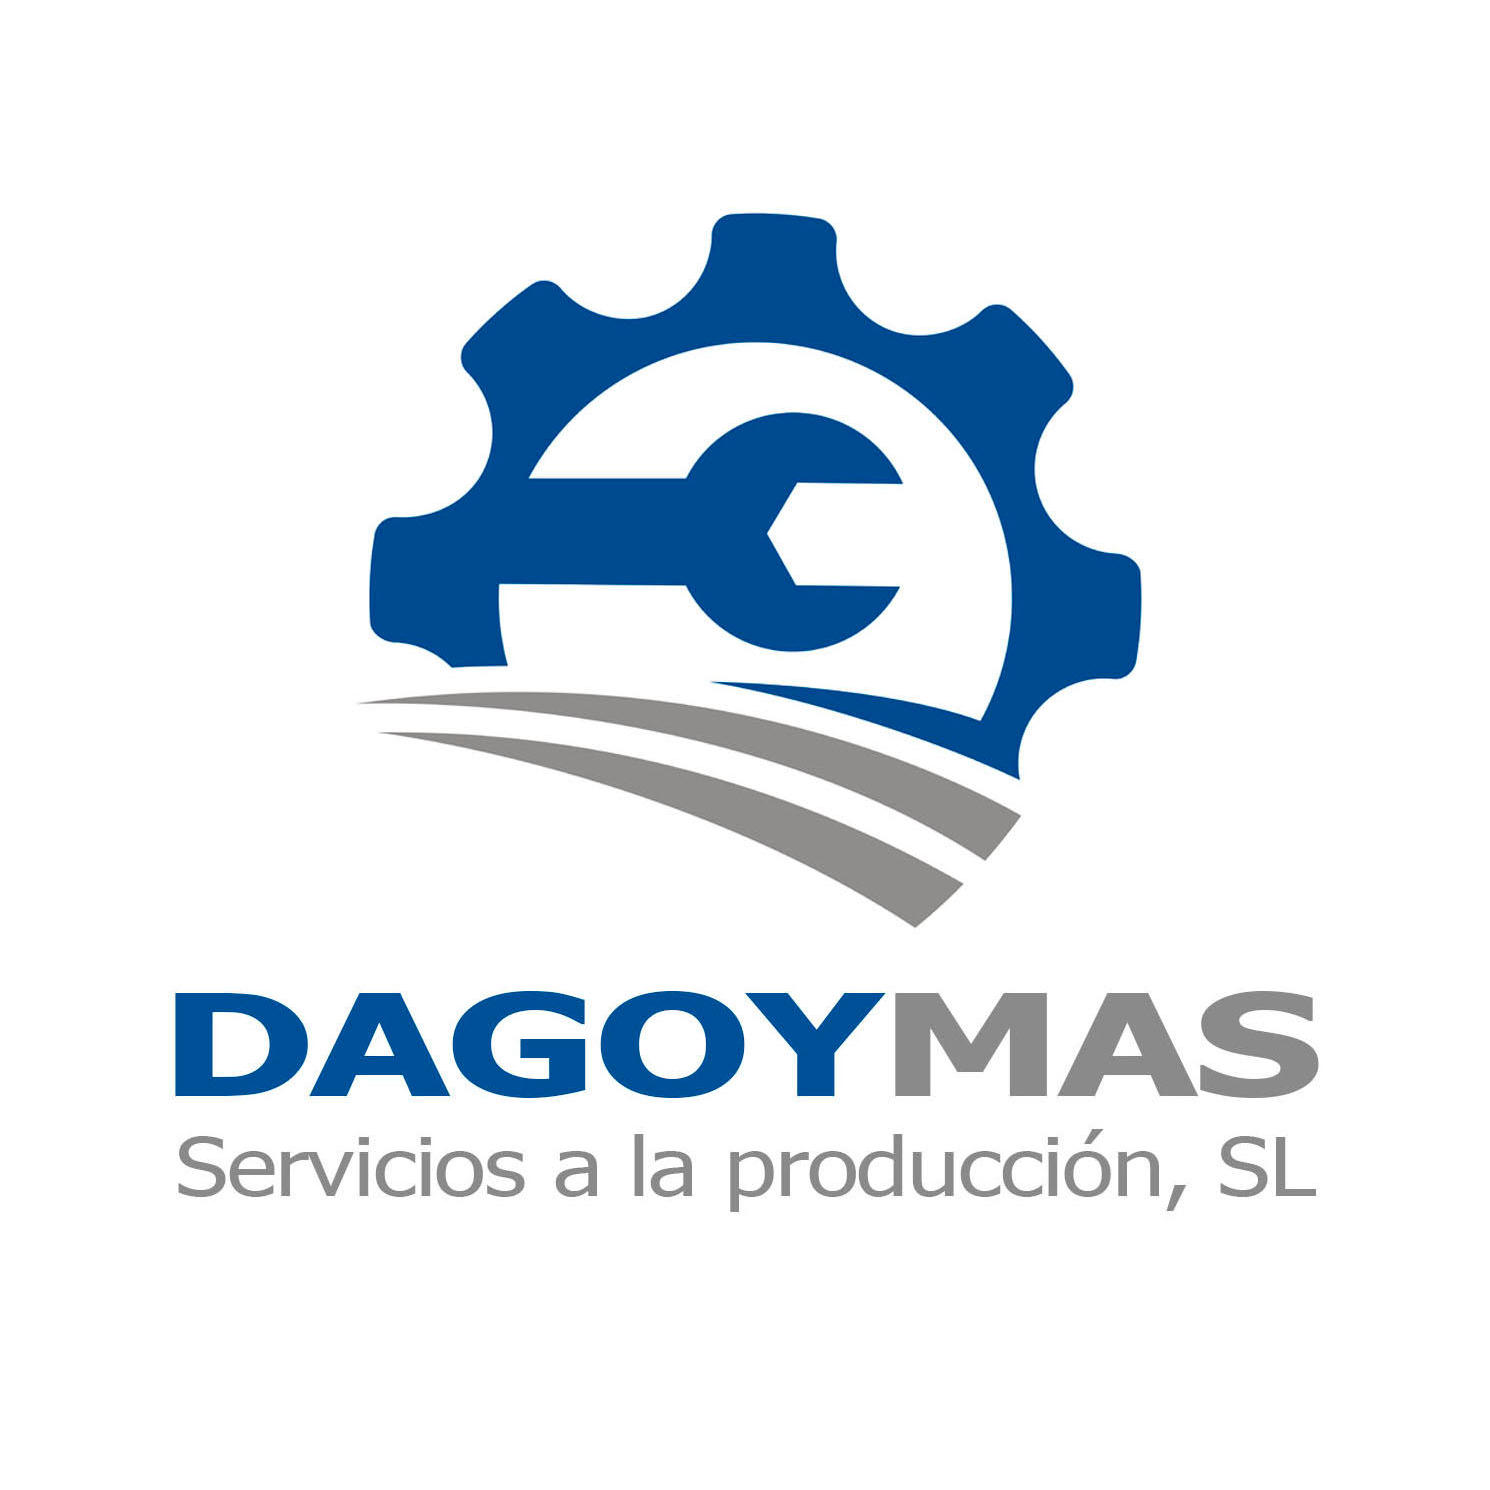 Dagoymas Logo